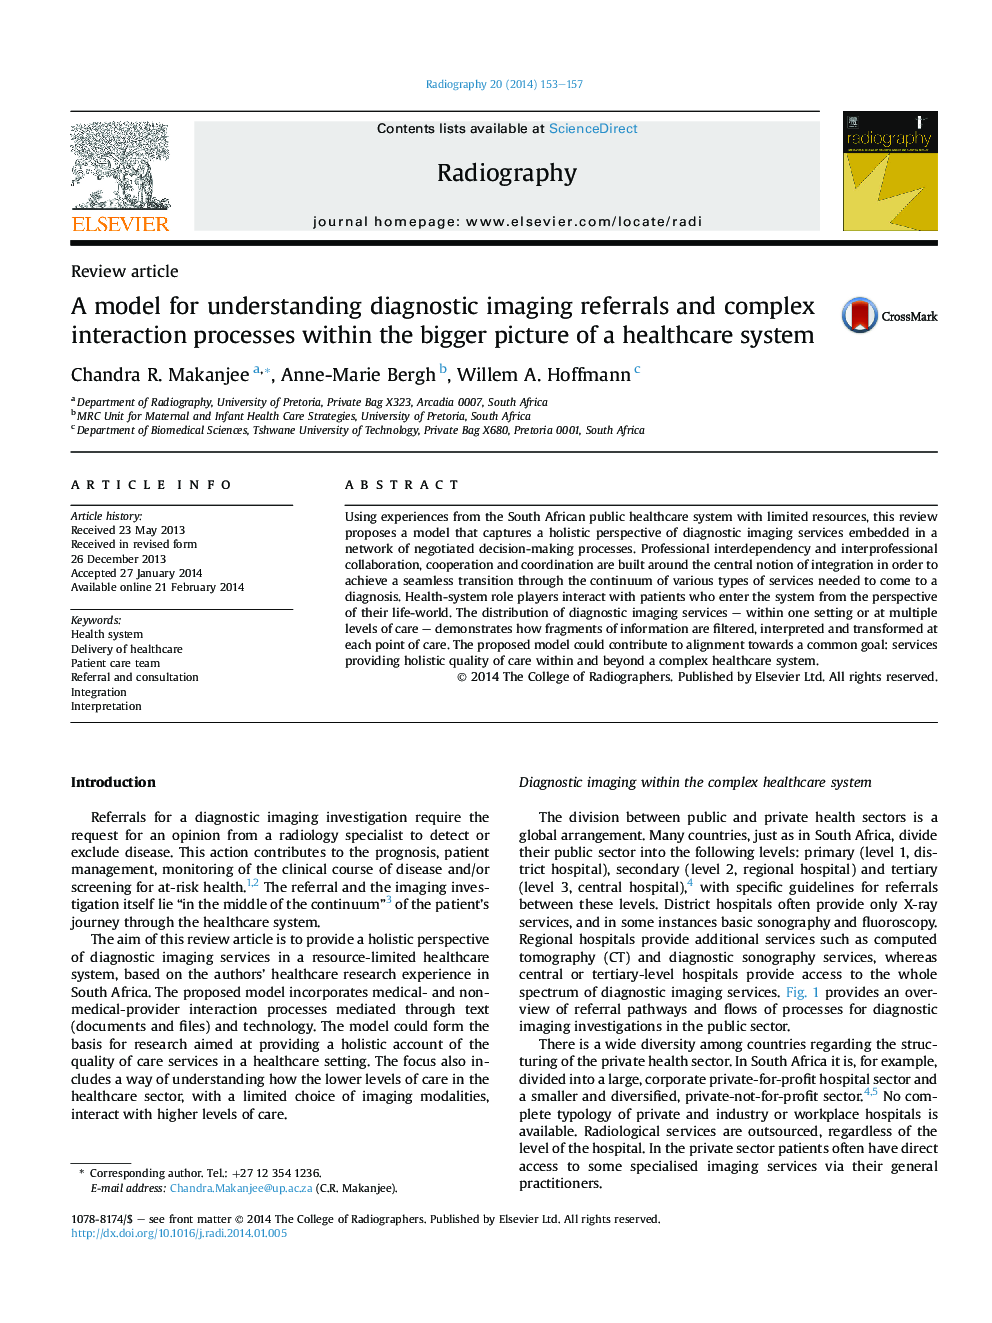 مدل برای فهم ارجاع های تصویری تشخیصی و فرآیندهای پیچیده تعامل در تصویر بزرگتر از یک سیستم مراقبت بهداشتی 